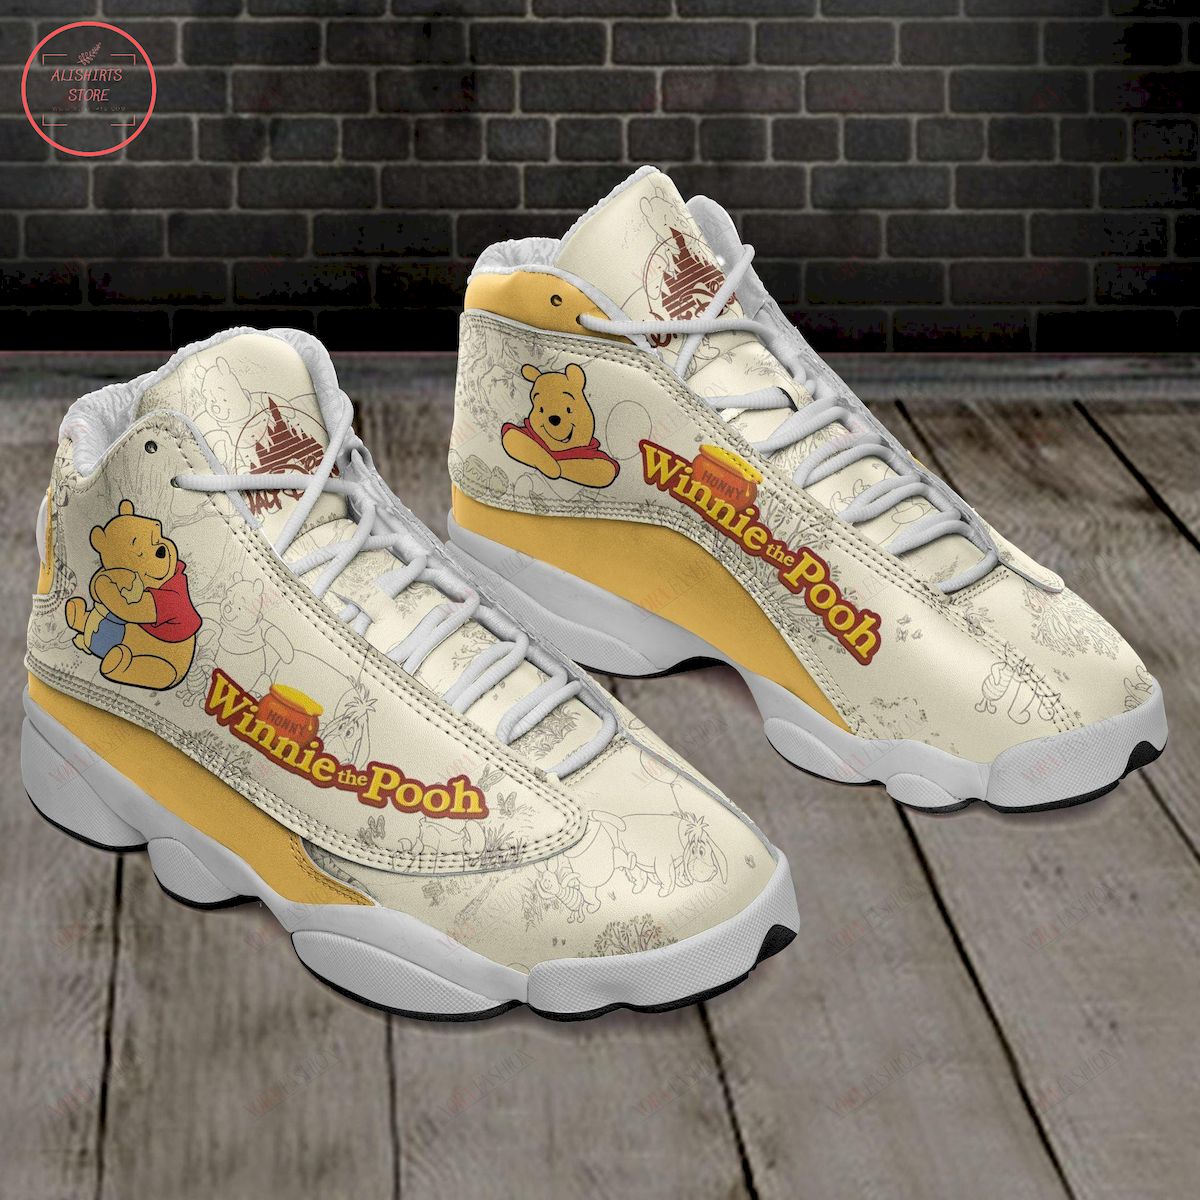 Winnie the Pooh Air Jordan 13 Sneaker